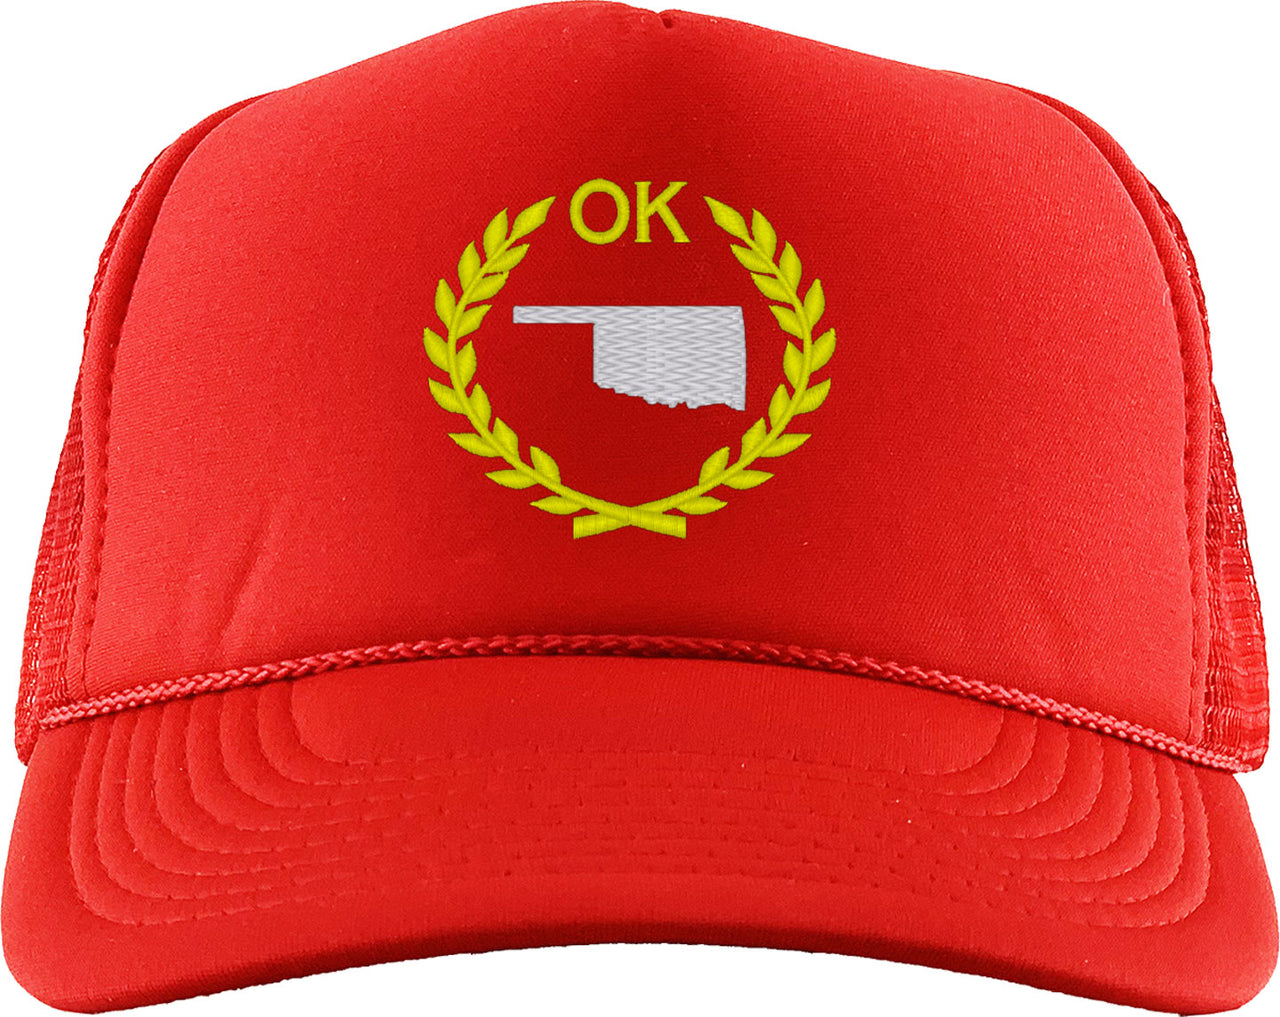 Oklahoma State Foam Trucker Hat